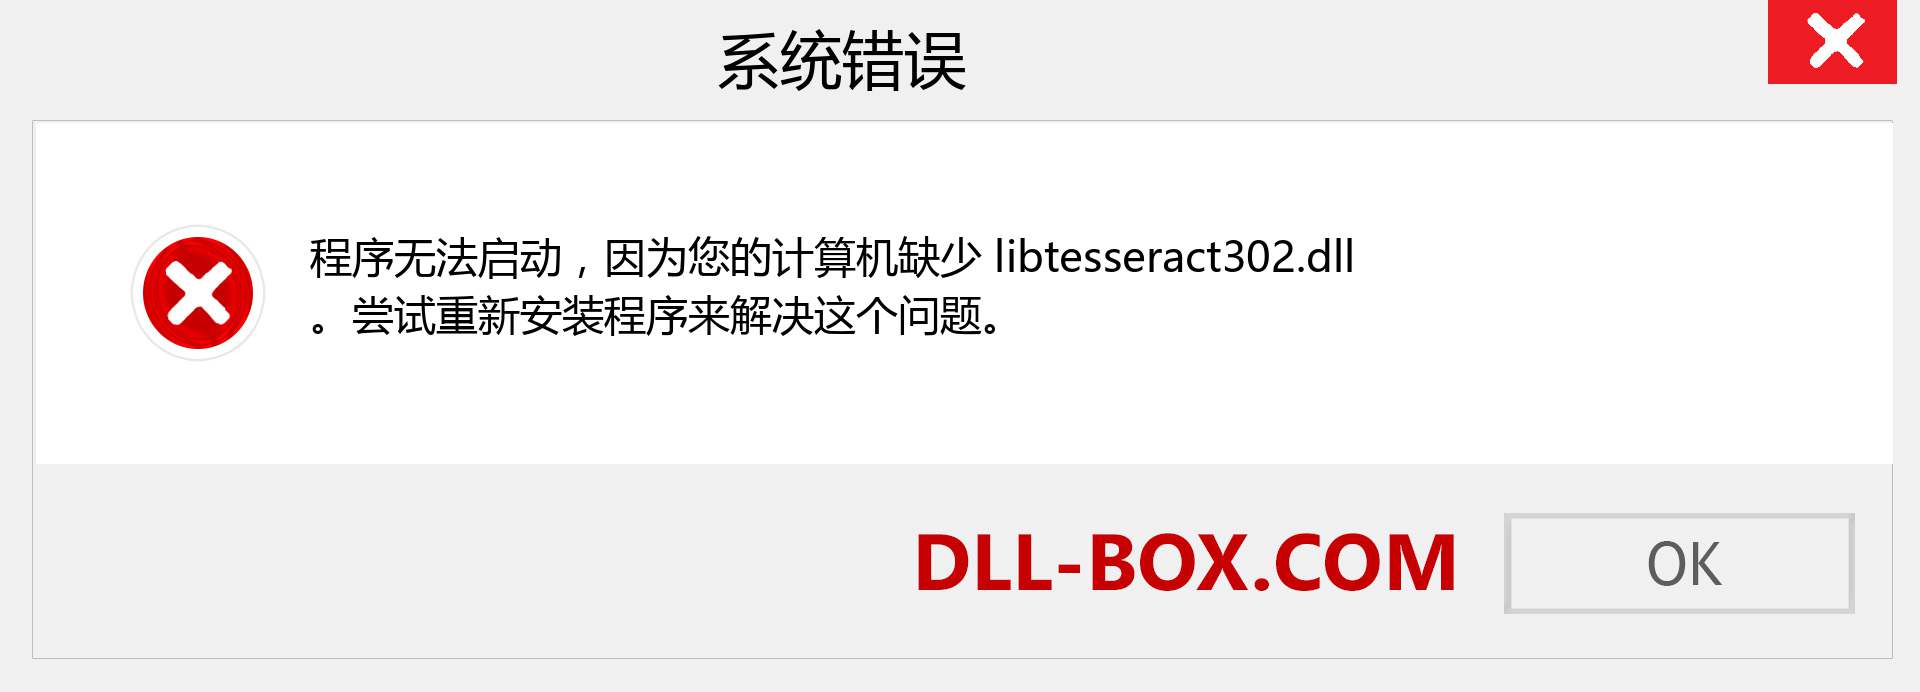 libtesseract302.dll 文件丢失？。 适用于 Windows 7、8、10 的下载 - 修复 Windows、照片、图像上的 libtesseract302 dll 丢失错误